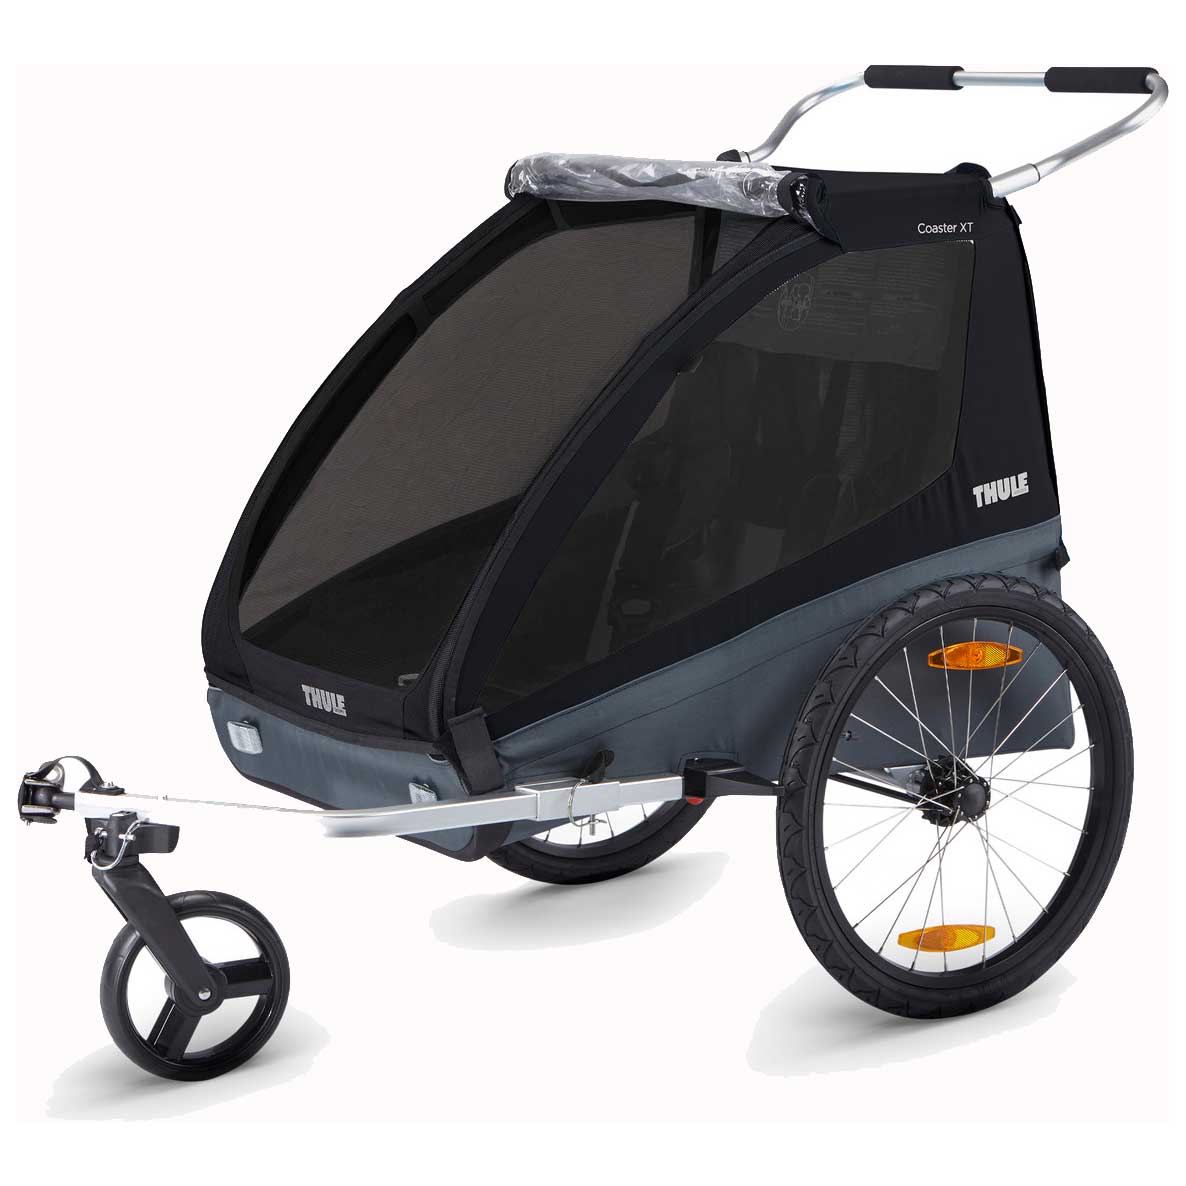 Bild von Thule Coaster XT Fahrradanhänger für 1-2 Kinder - Fahrrad + Buggy Set - schwarz